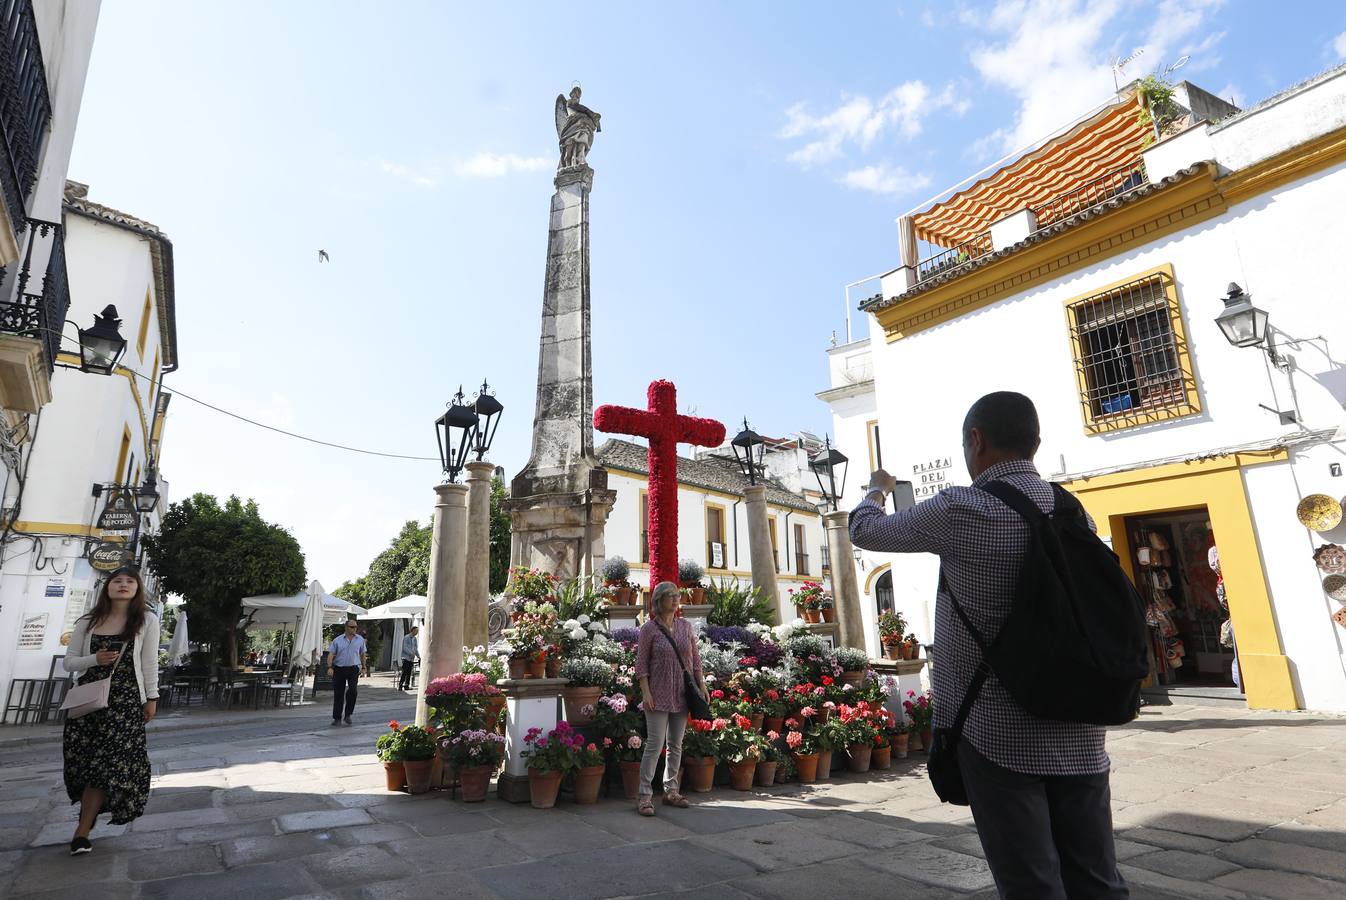 El viernes en las Cruces de Mayo de Córdoba, en imágenes